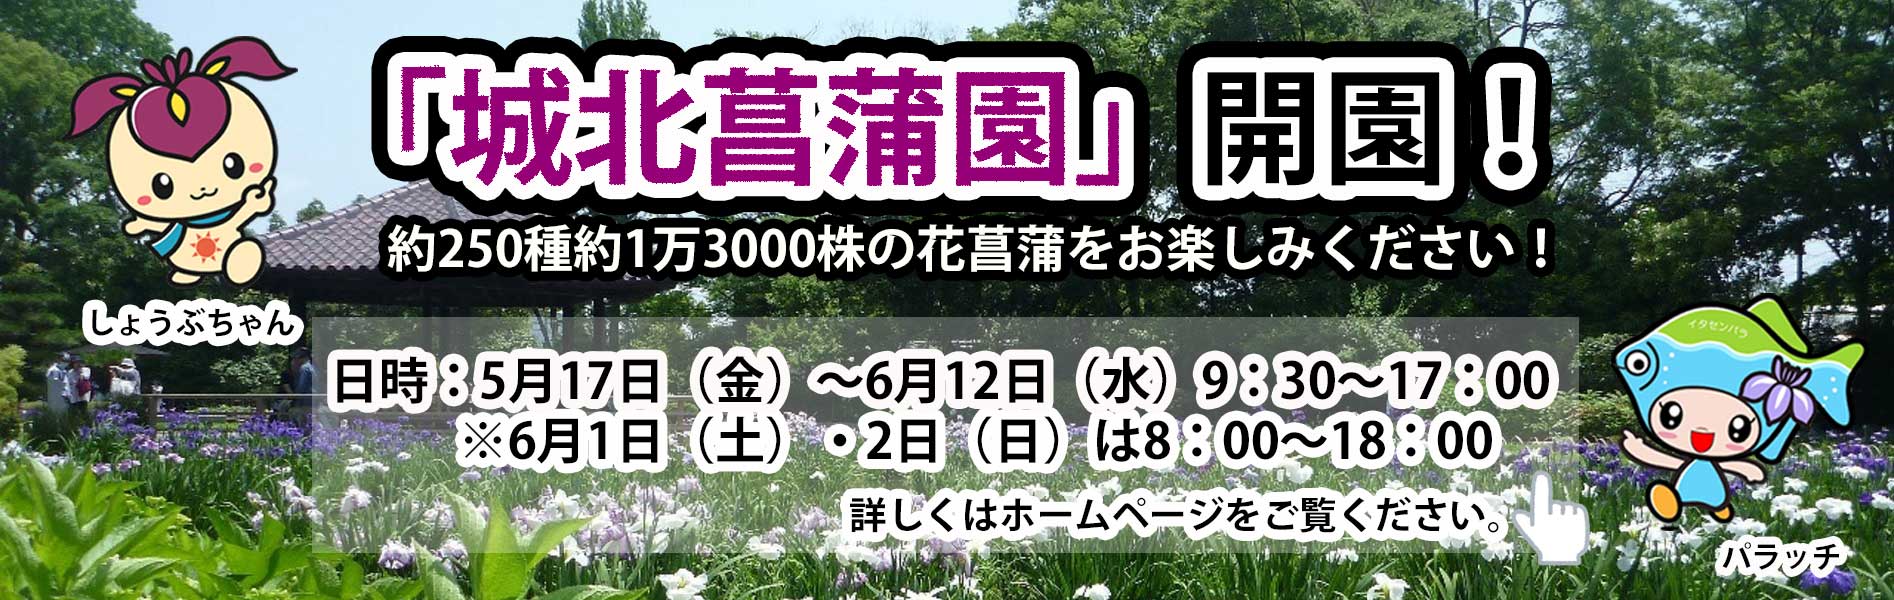 城北菖蒲園を開園します。5月17日から6月12日まで